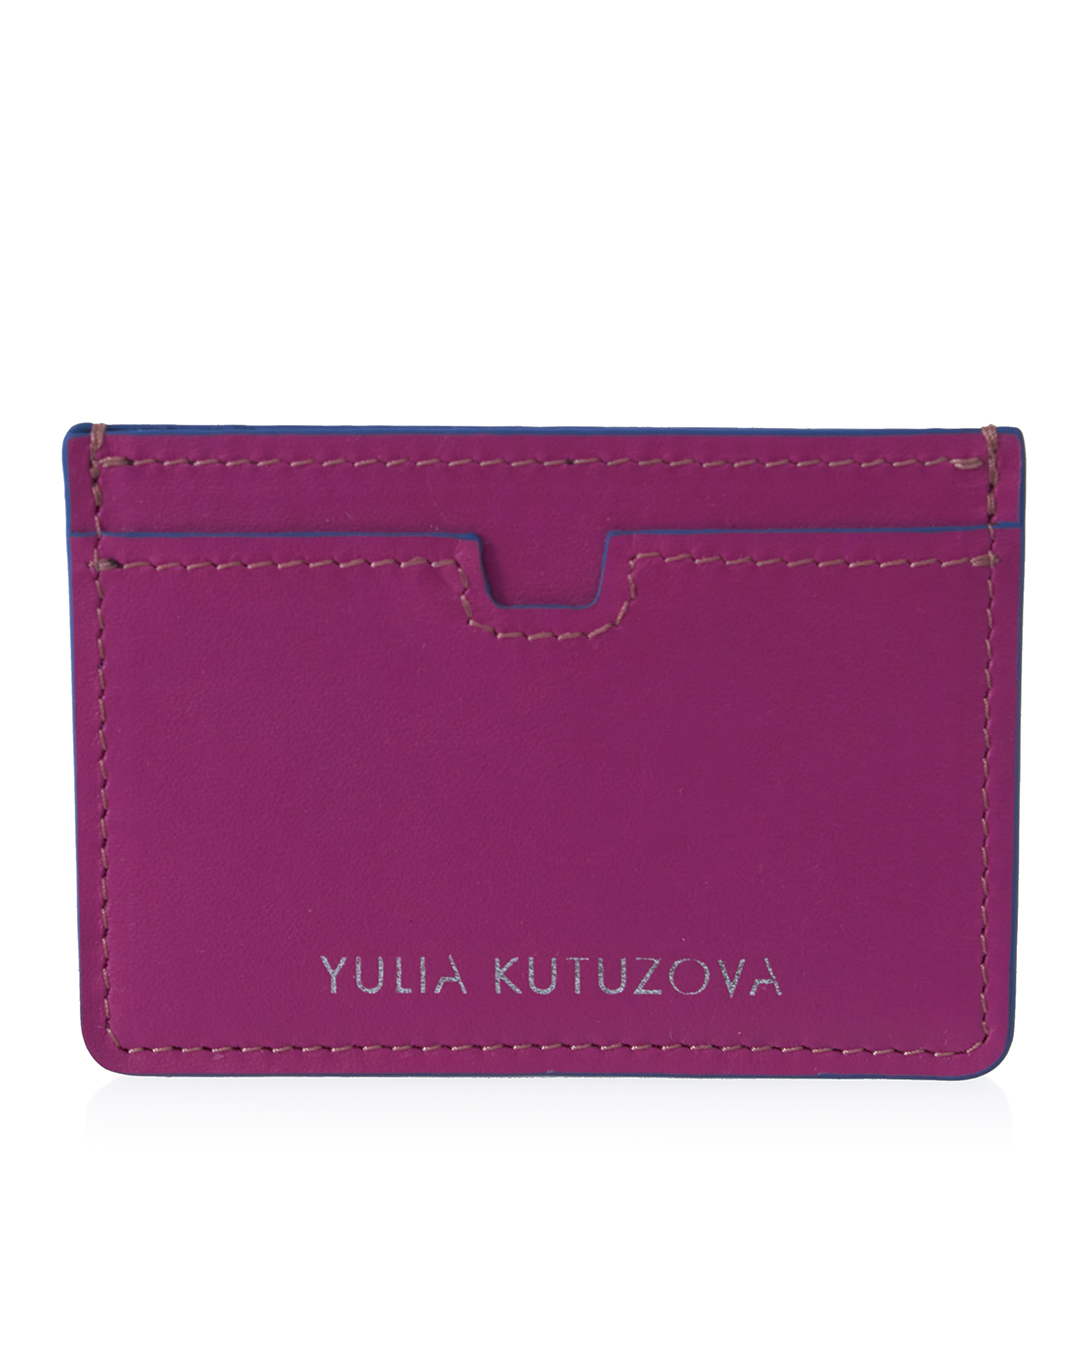 YULIA KUTUZOVA  артикул PINK AND DARK BLUE марки YULIA KUTUZOVA купить за 4600 руб.